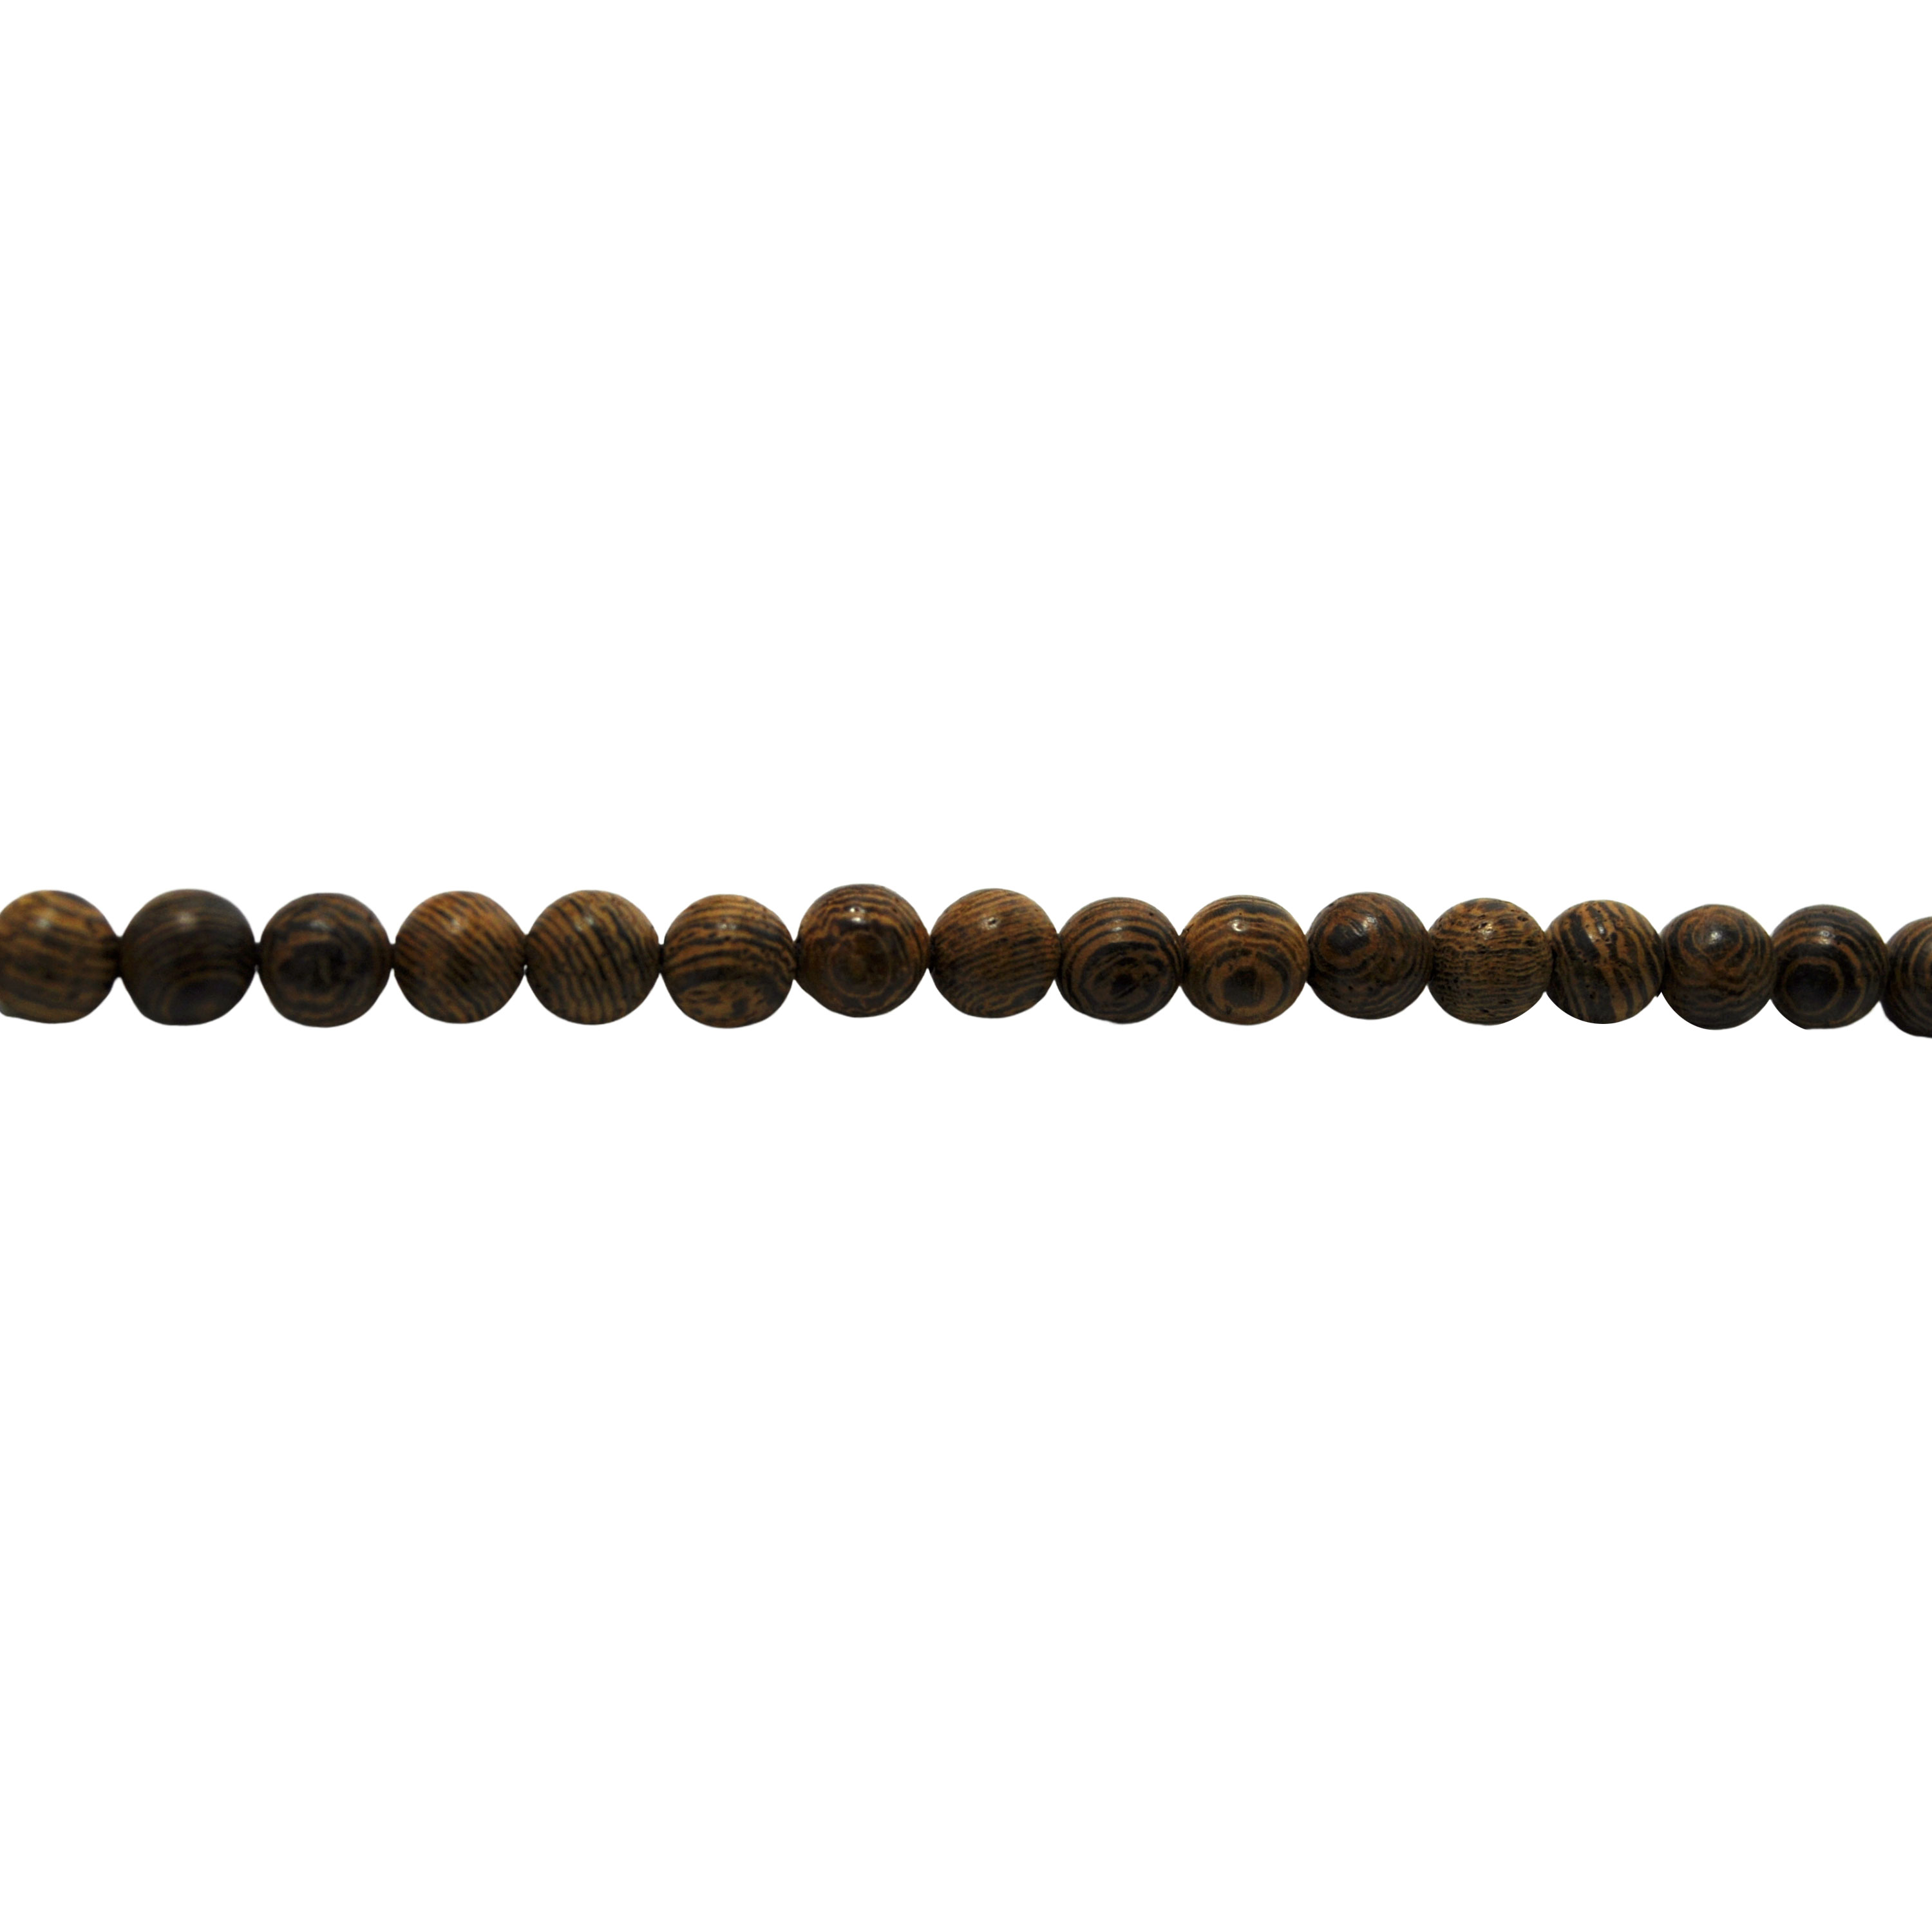 6mm Wenge Wood Beads - 26" Strand